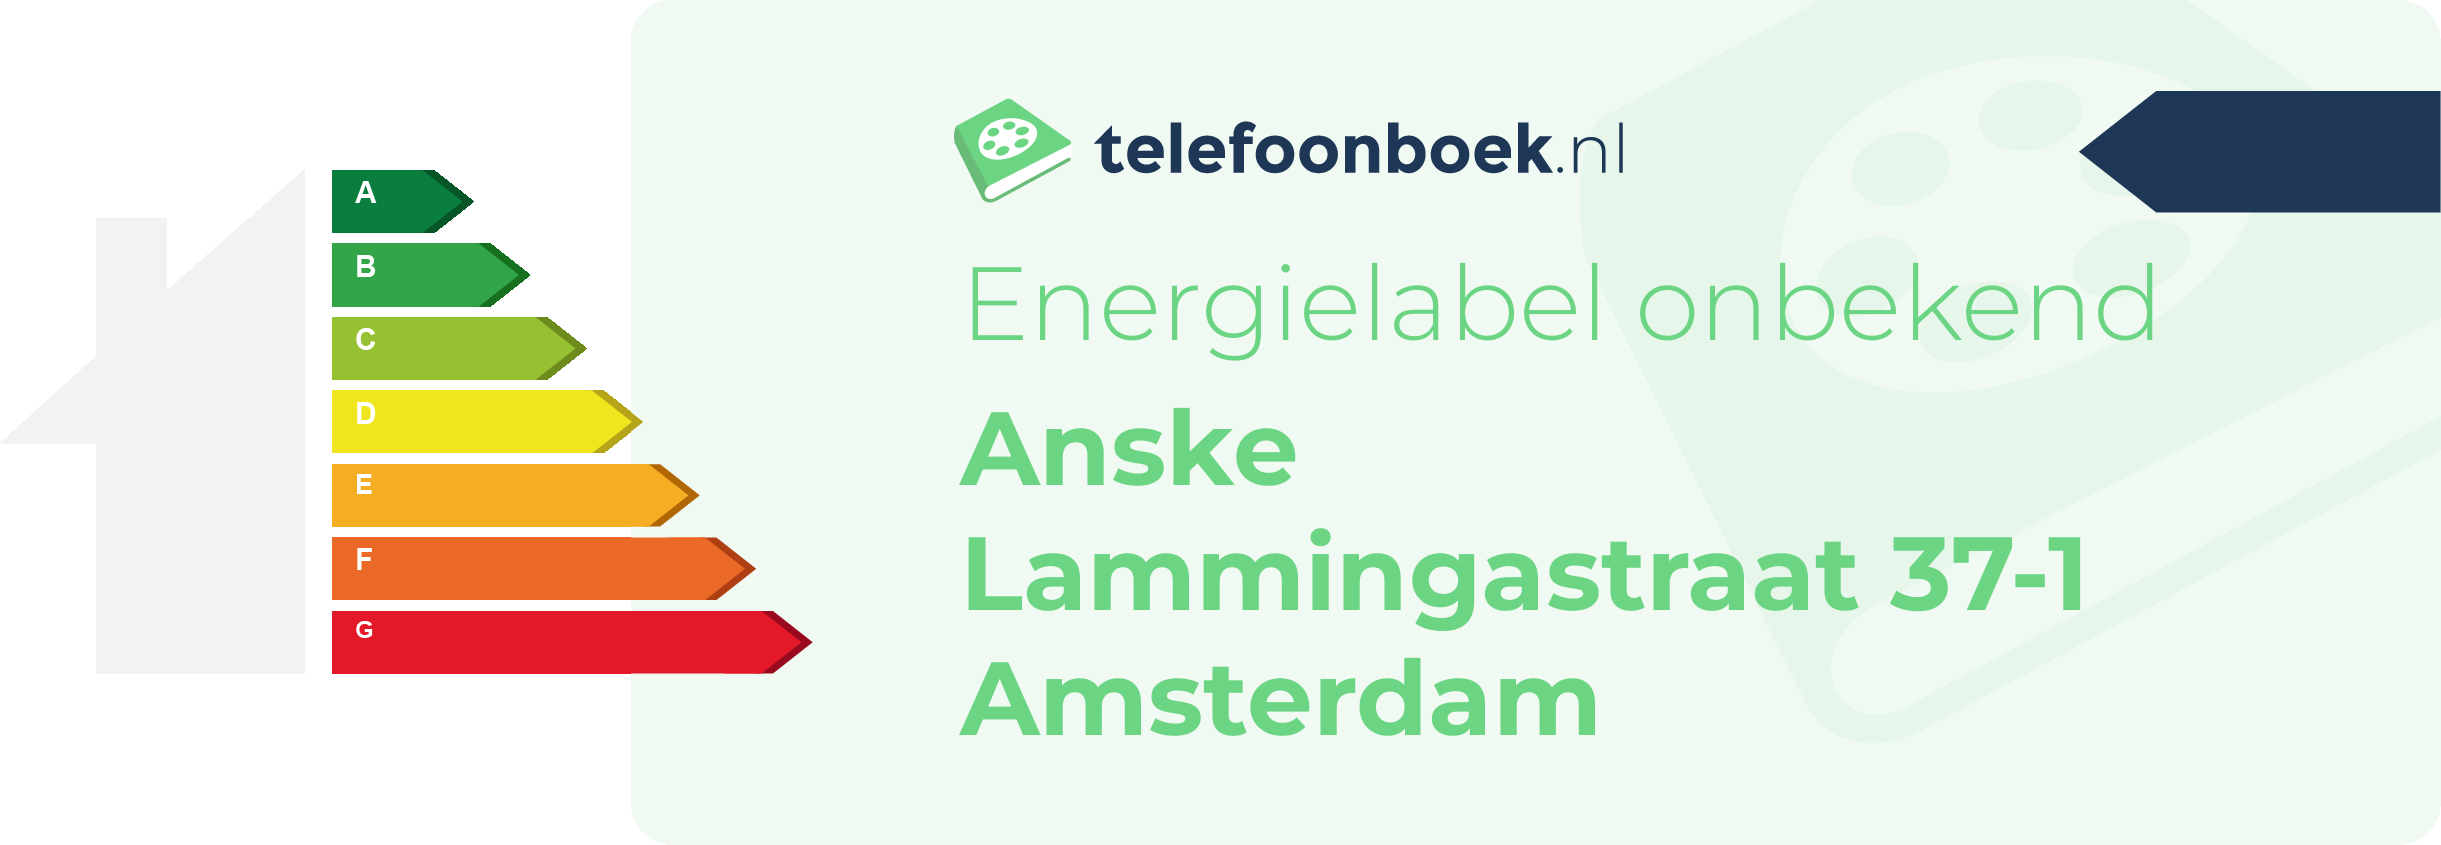 Energielabel Anske Lammingastraat 37-1 Amsterdam